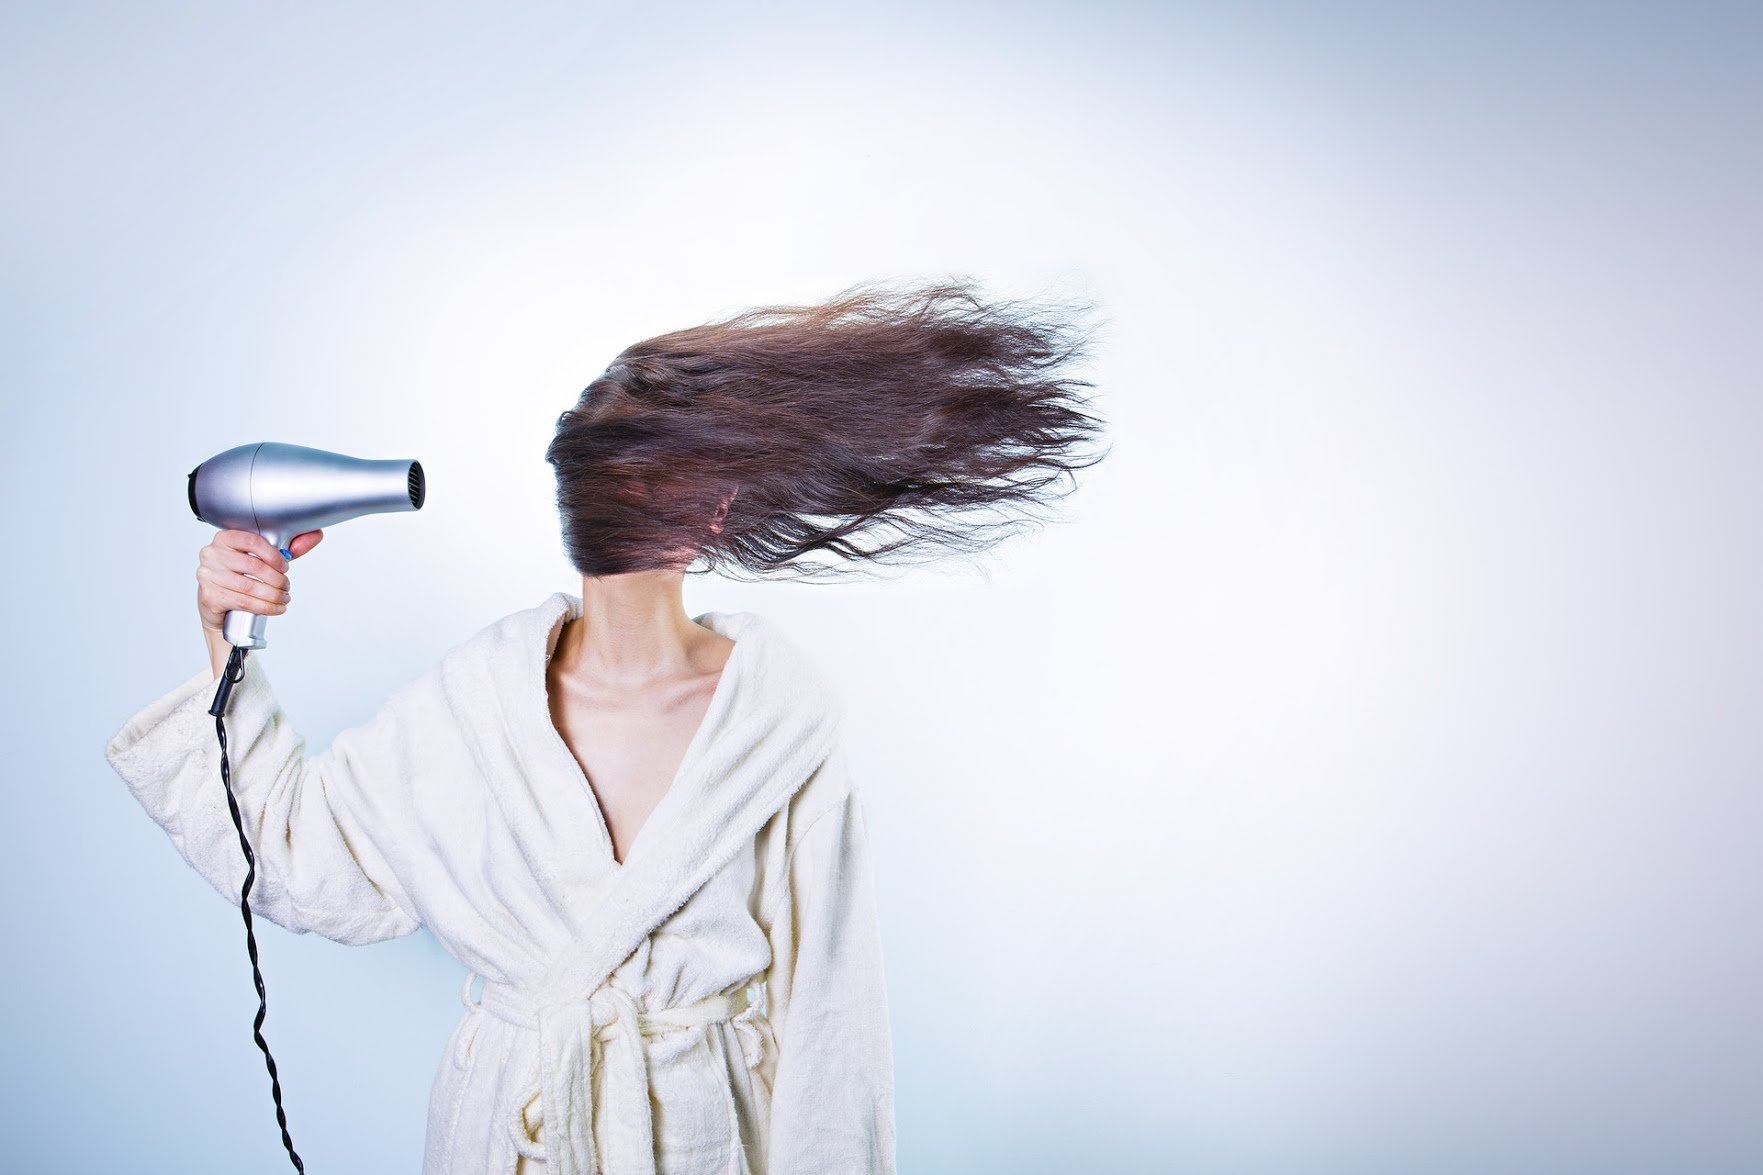 Jangan Asal Rawat Rambut! Ini 5 Tips Jaga Rambut Sehat dan Kuat